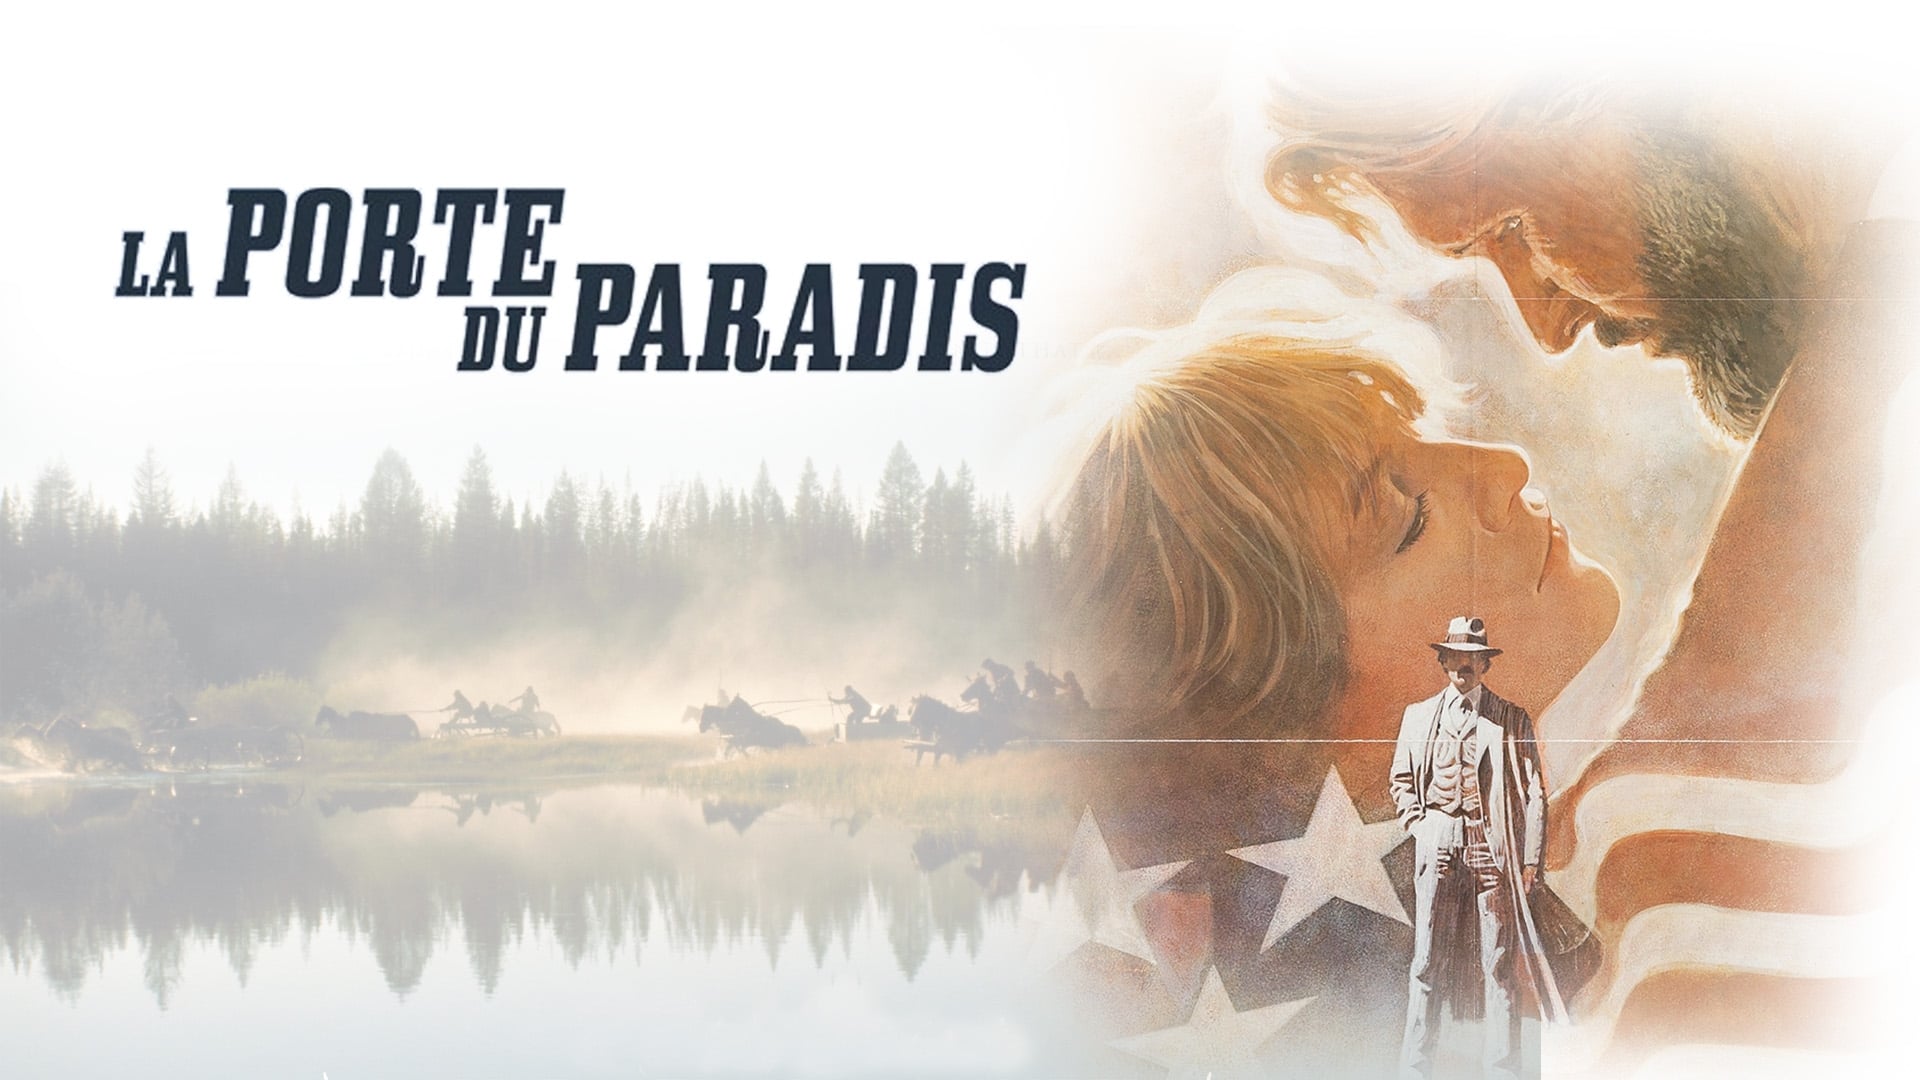 Image du film La Porte du paradis (version réalisateur) gfwnoebfllnlg3ueqhq9iodvotwjpg